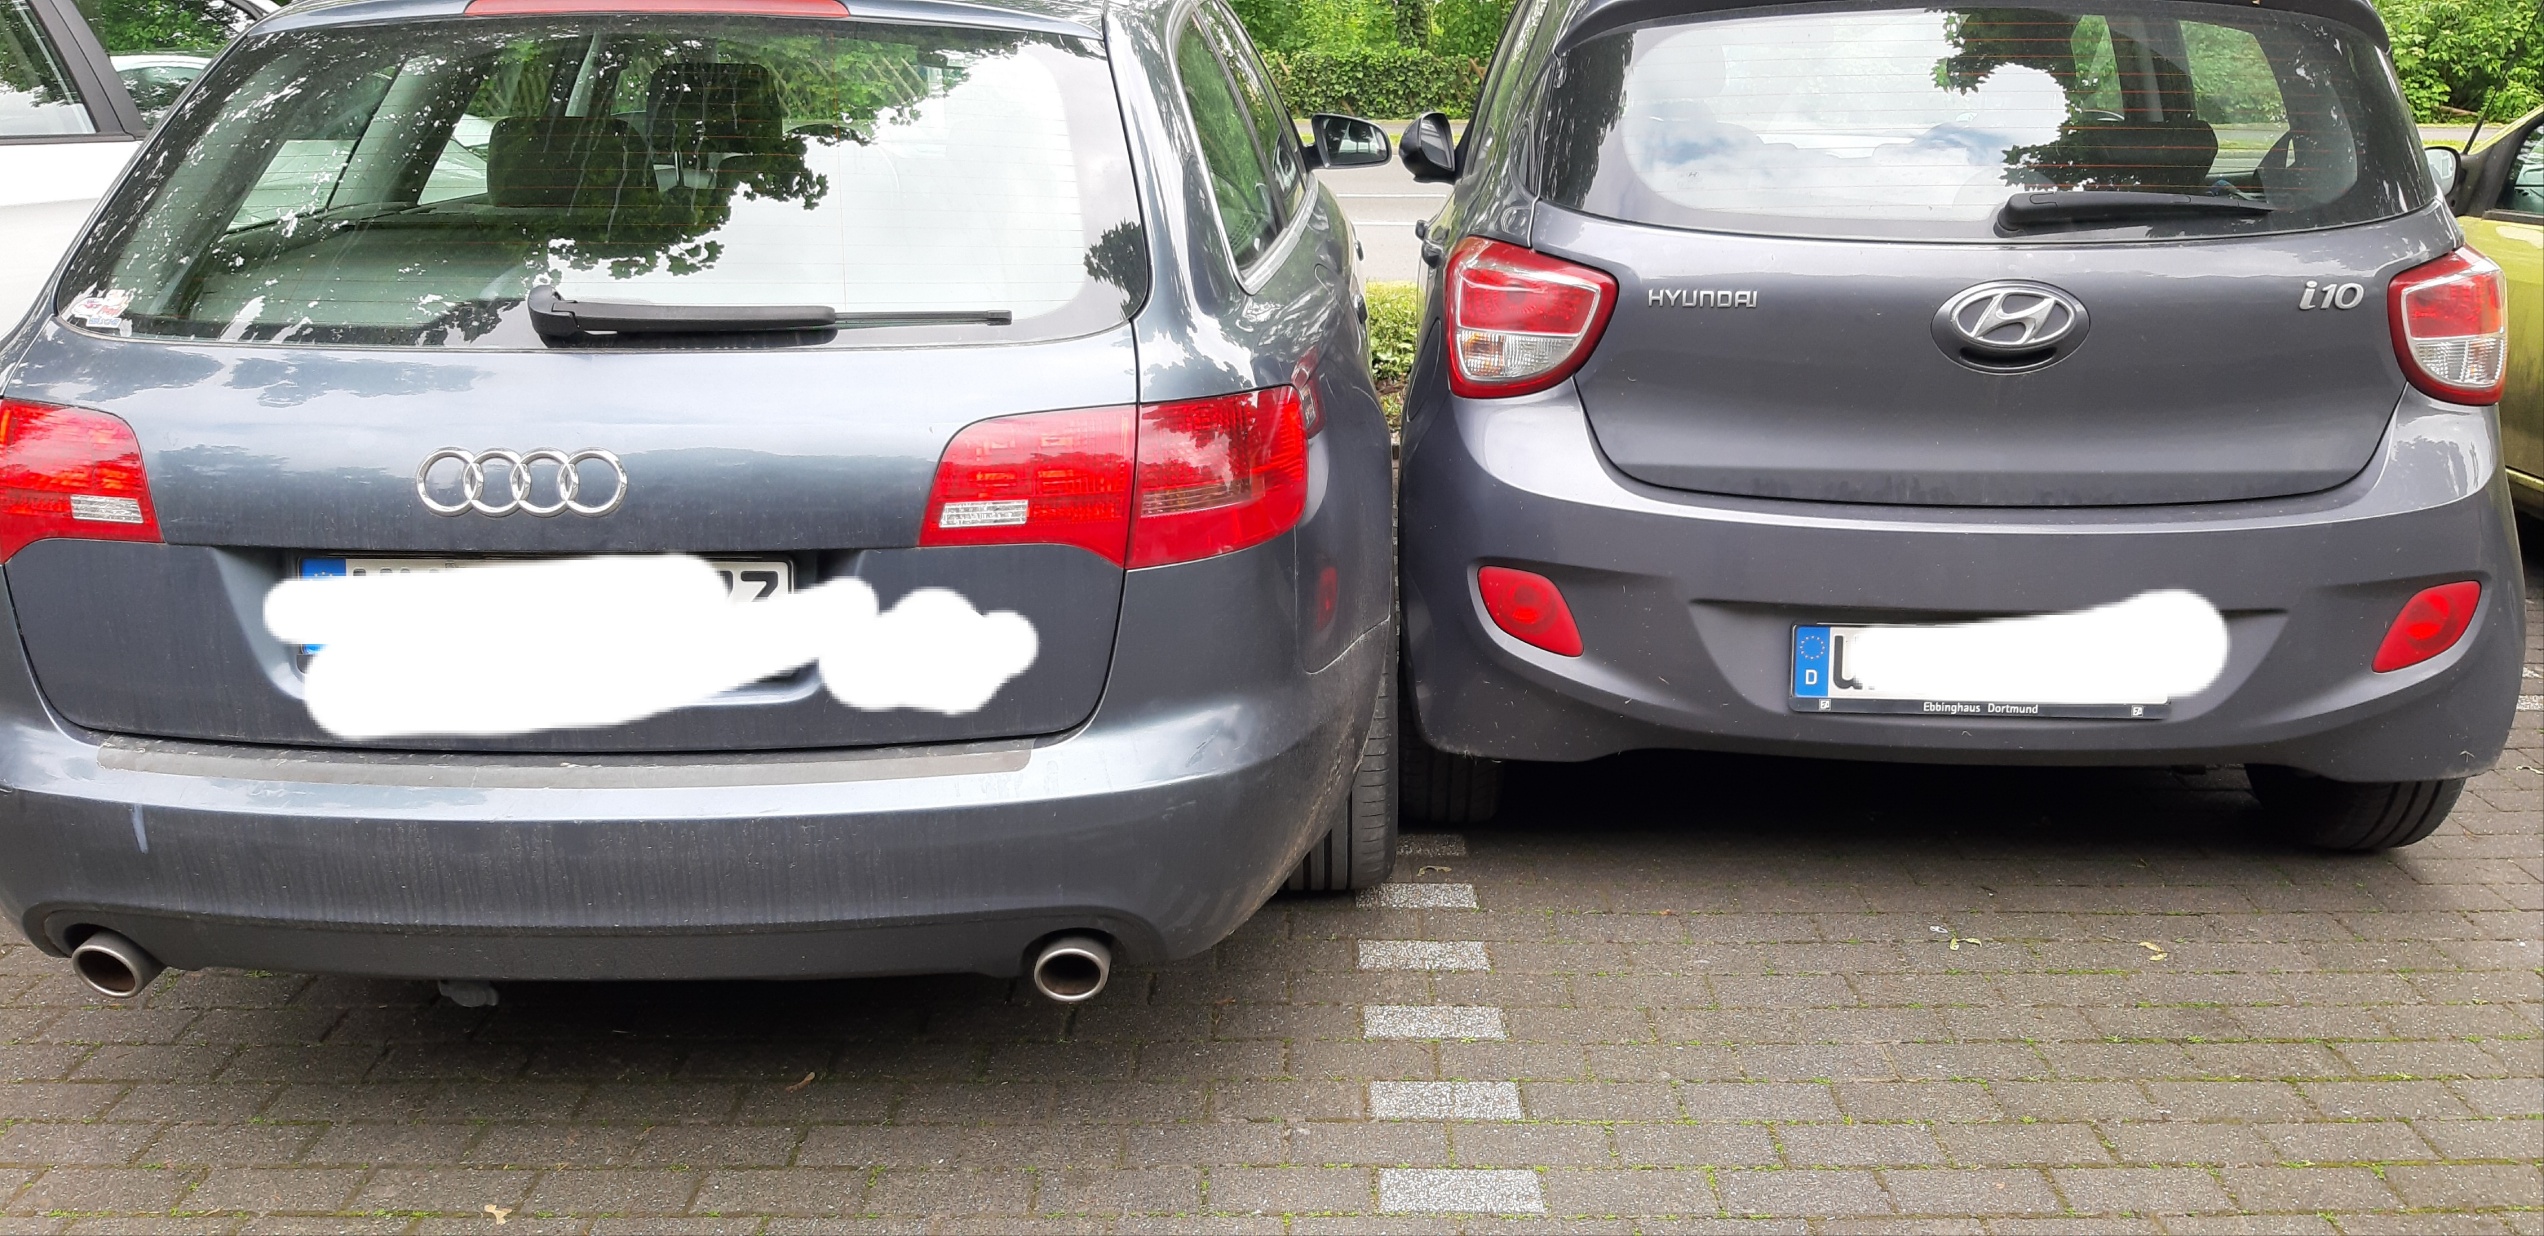 „Kuschlig“ eingeparkt auf Parkplatz in Fröndenberg: Nötigung oder nicht? Das sagt die Polizei